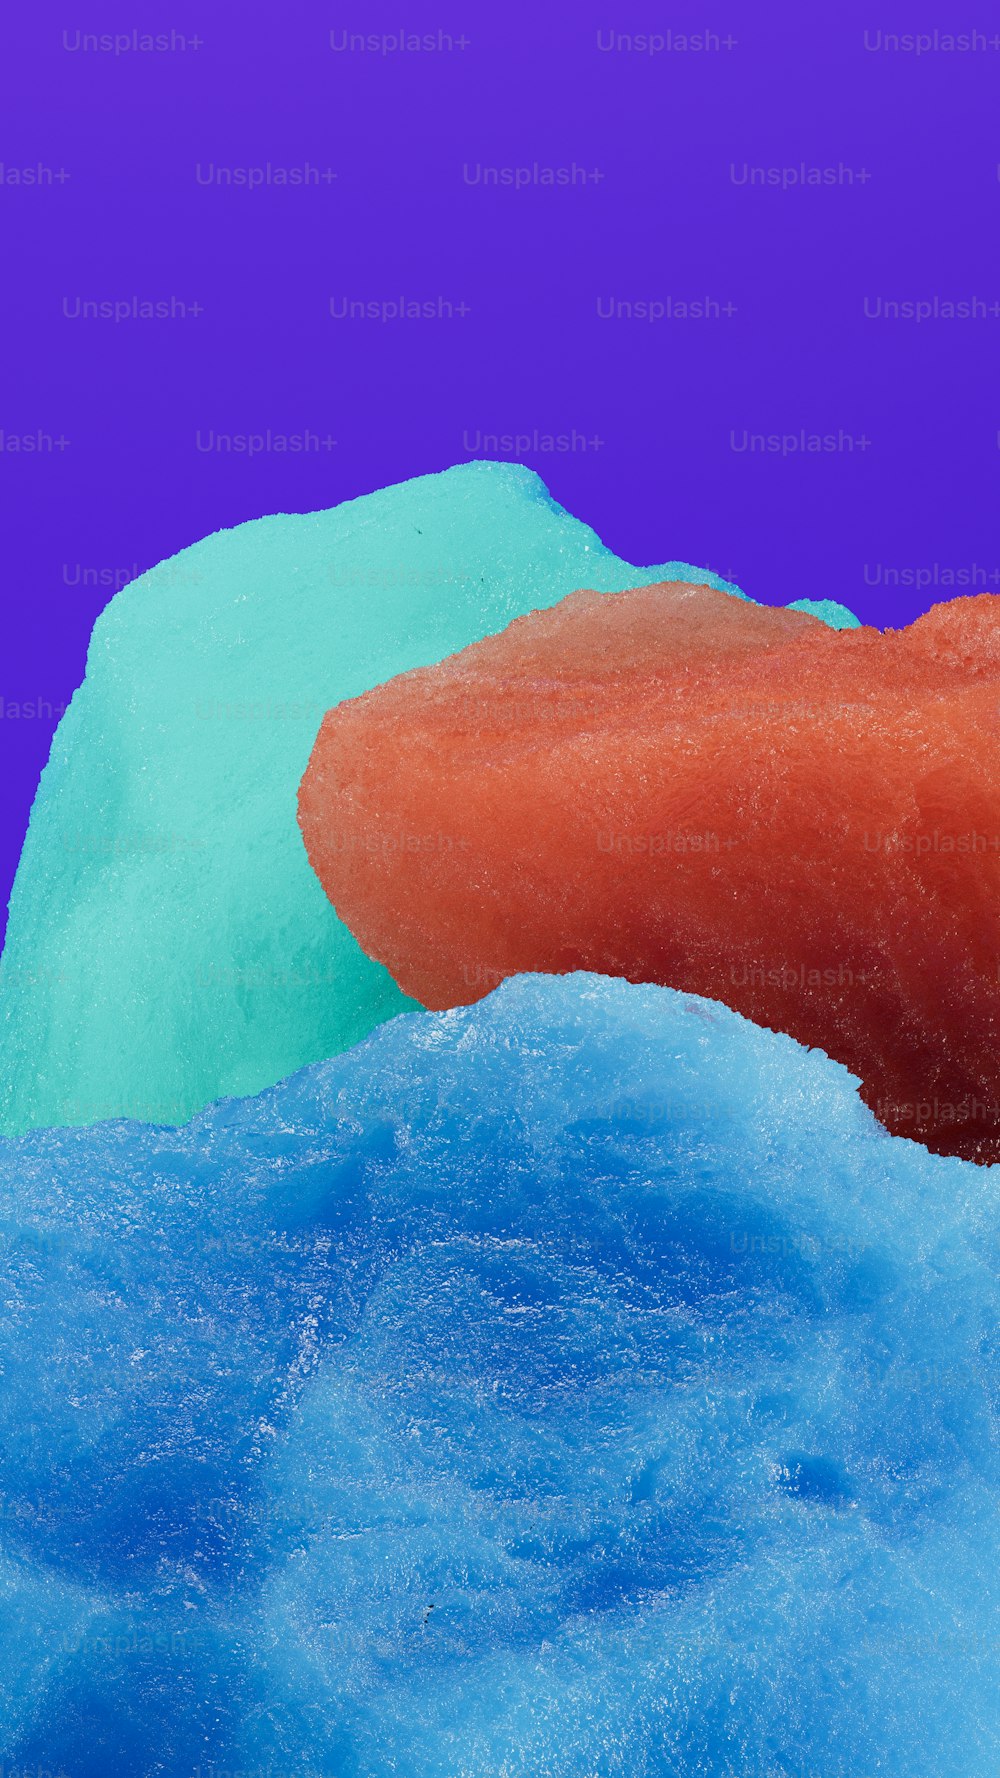 Un primer plano de una rosquilla sobre una superficie azul